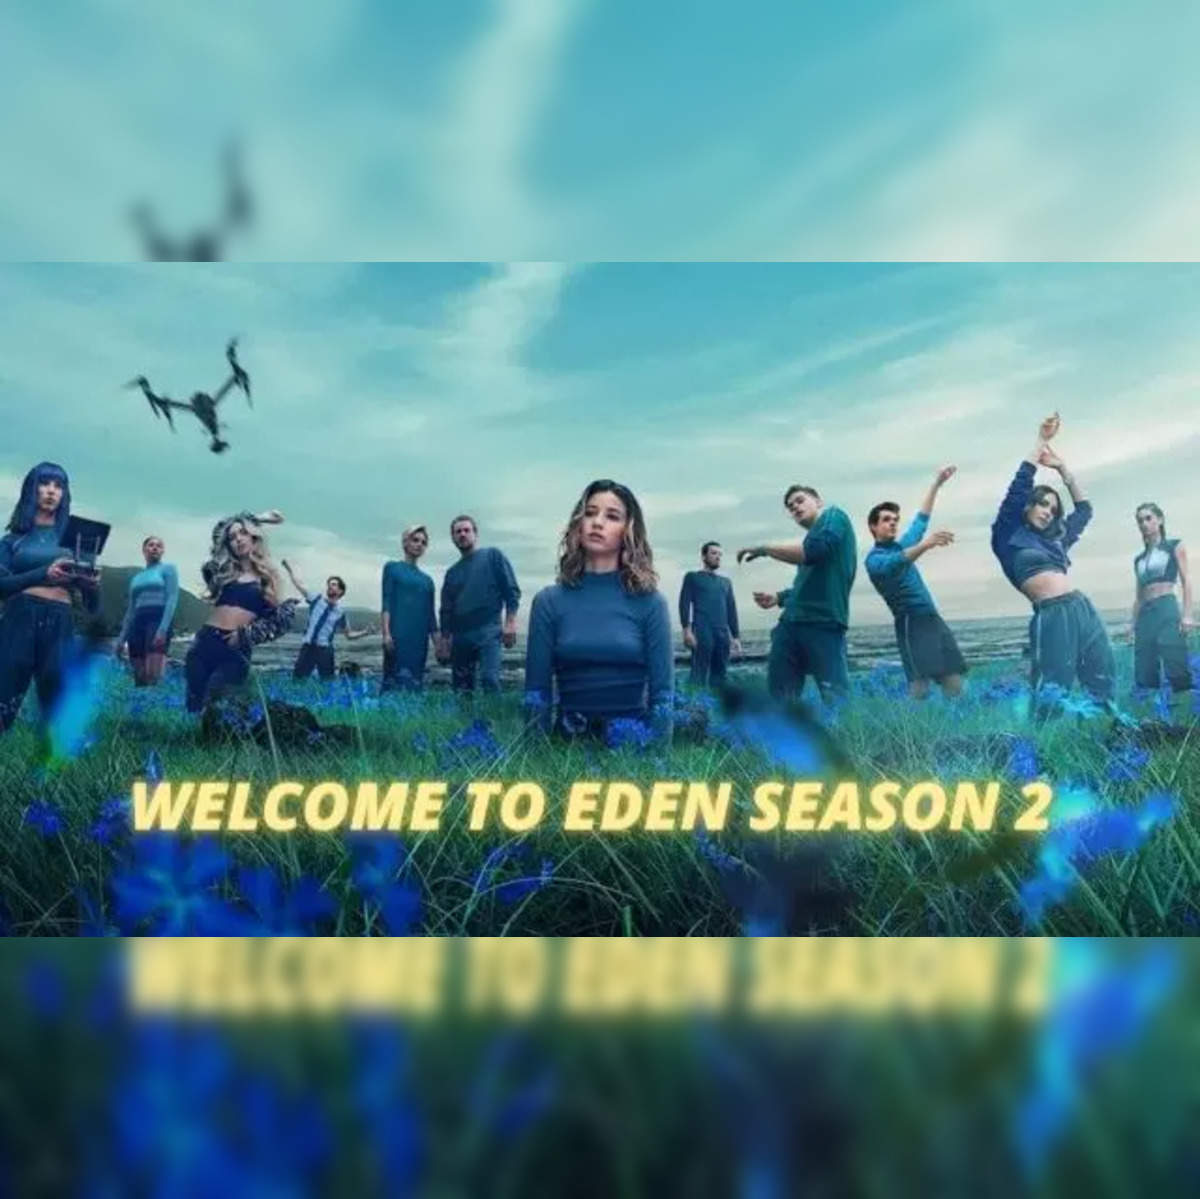 EDENS ZERO Season 2 Sets April 1 Launch with New Trailer, Cast